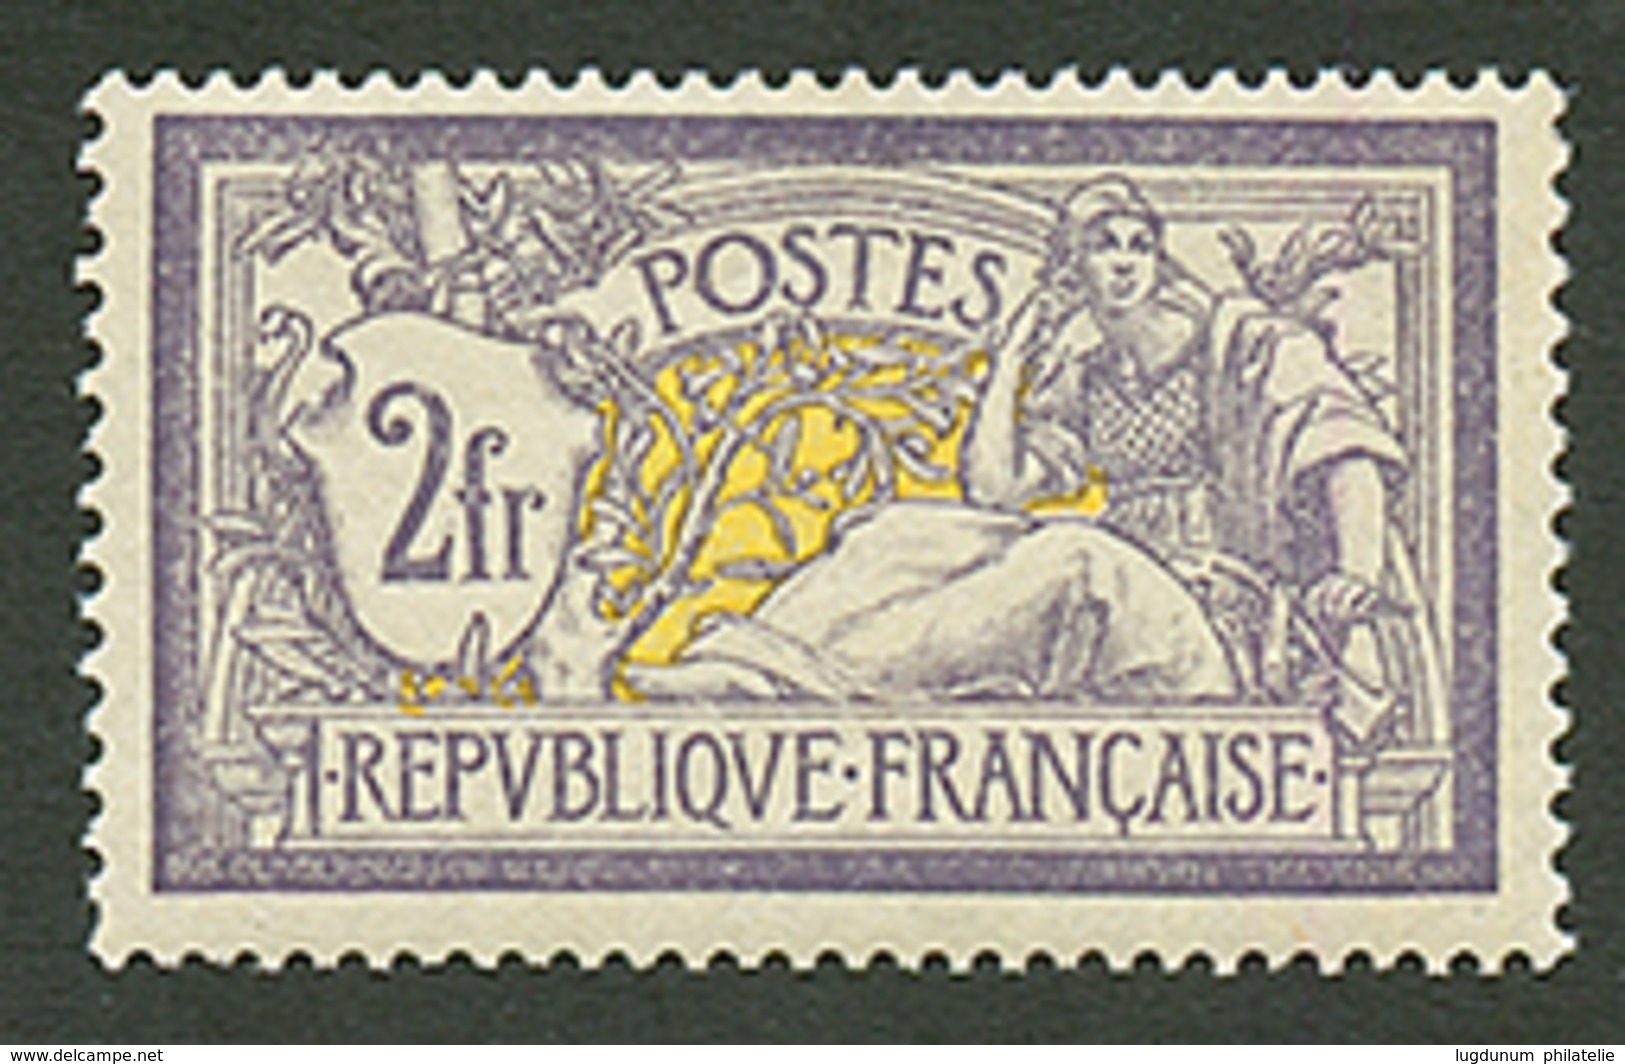 2F MERSON Violet (n°122) Neuf *. Trés Légère Trace De Charnière. Cote 1000€. Signé SCHELLER. Superbe. - 1900-27 Merson